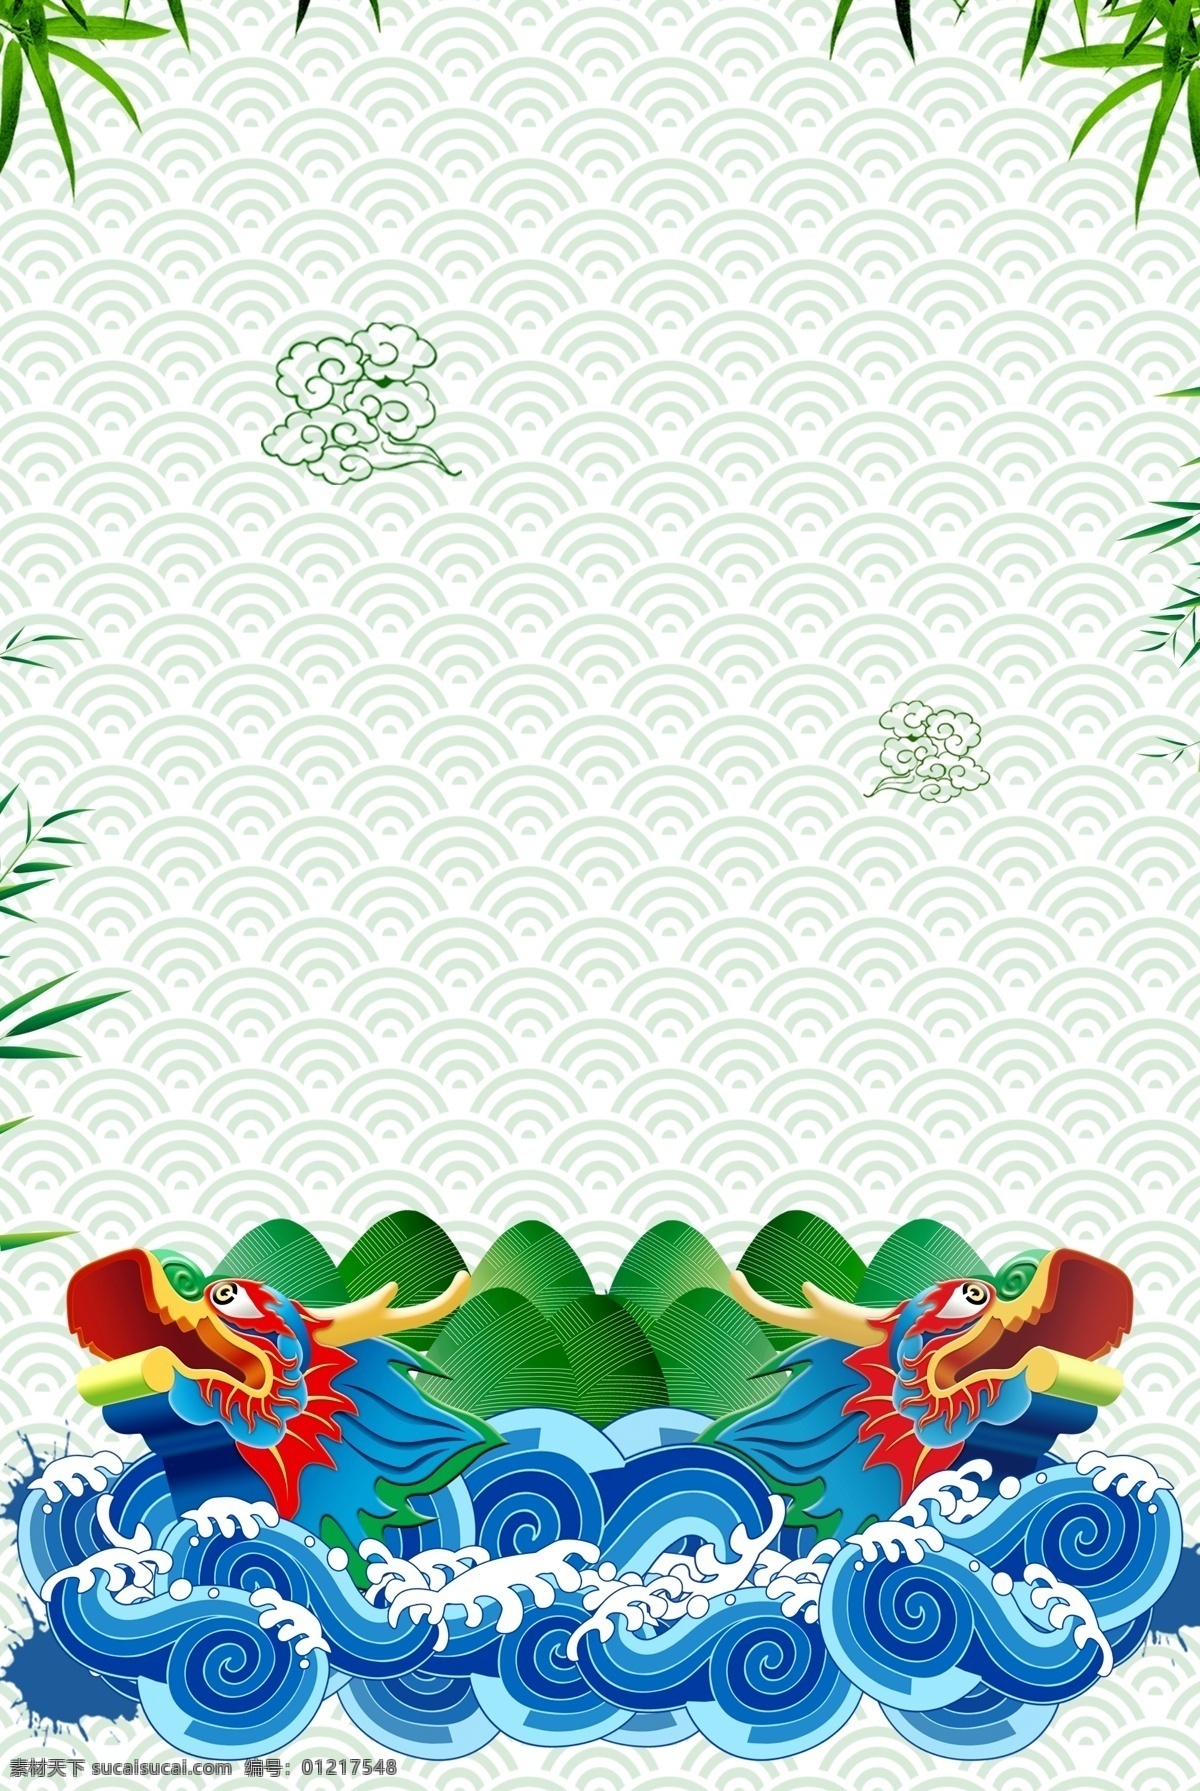 端午 节赛 龙舟 海报 端午节 赛龙舟 粽子 中国风 传统文化 传统佳节 宣传 广告 背景